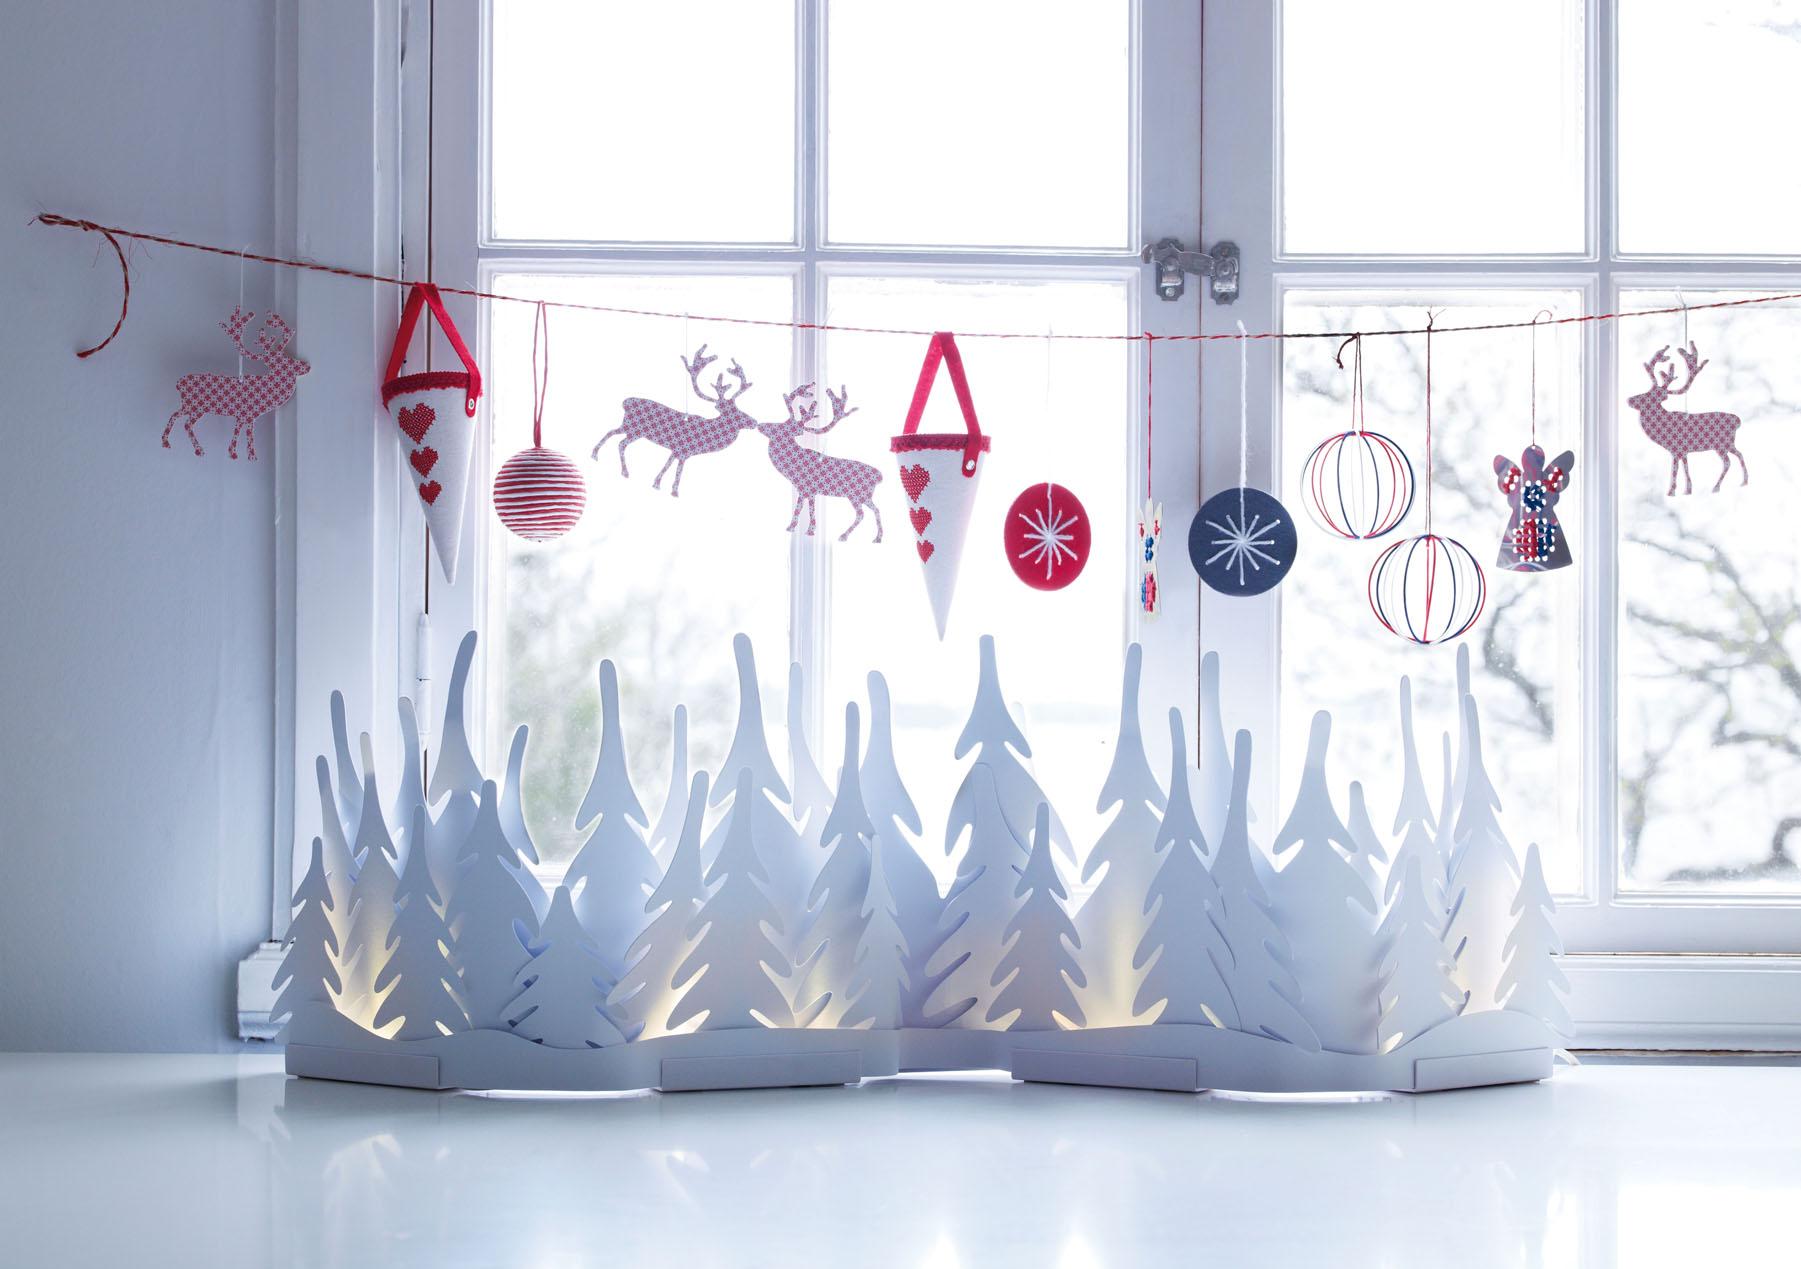 Оформление окна игрушками и бумажным декором на Новый год